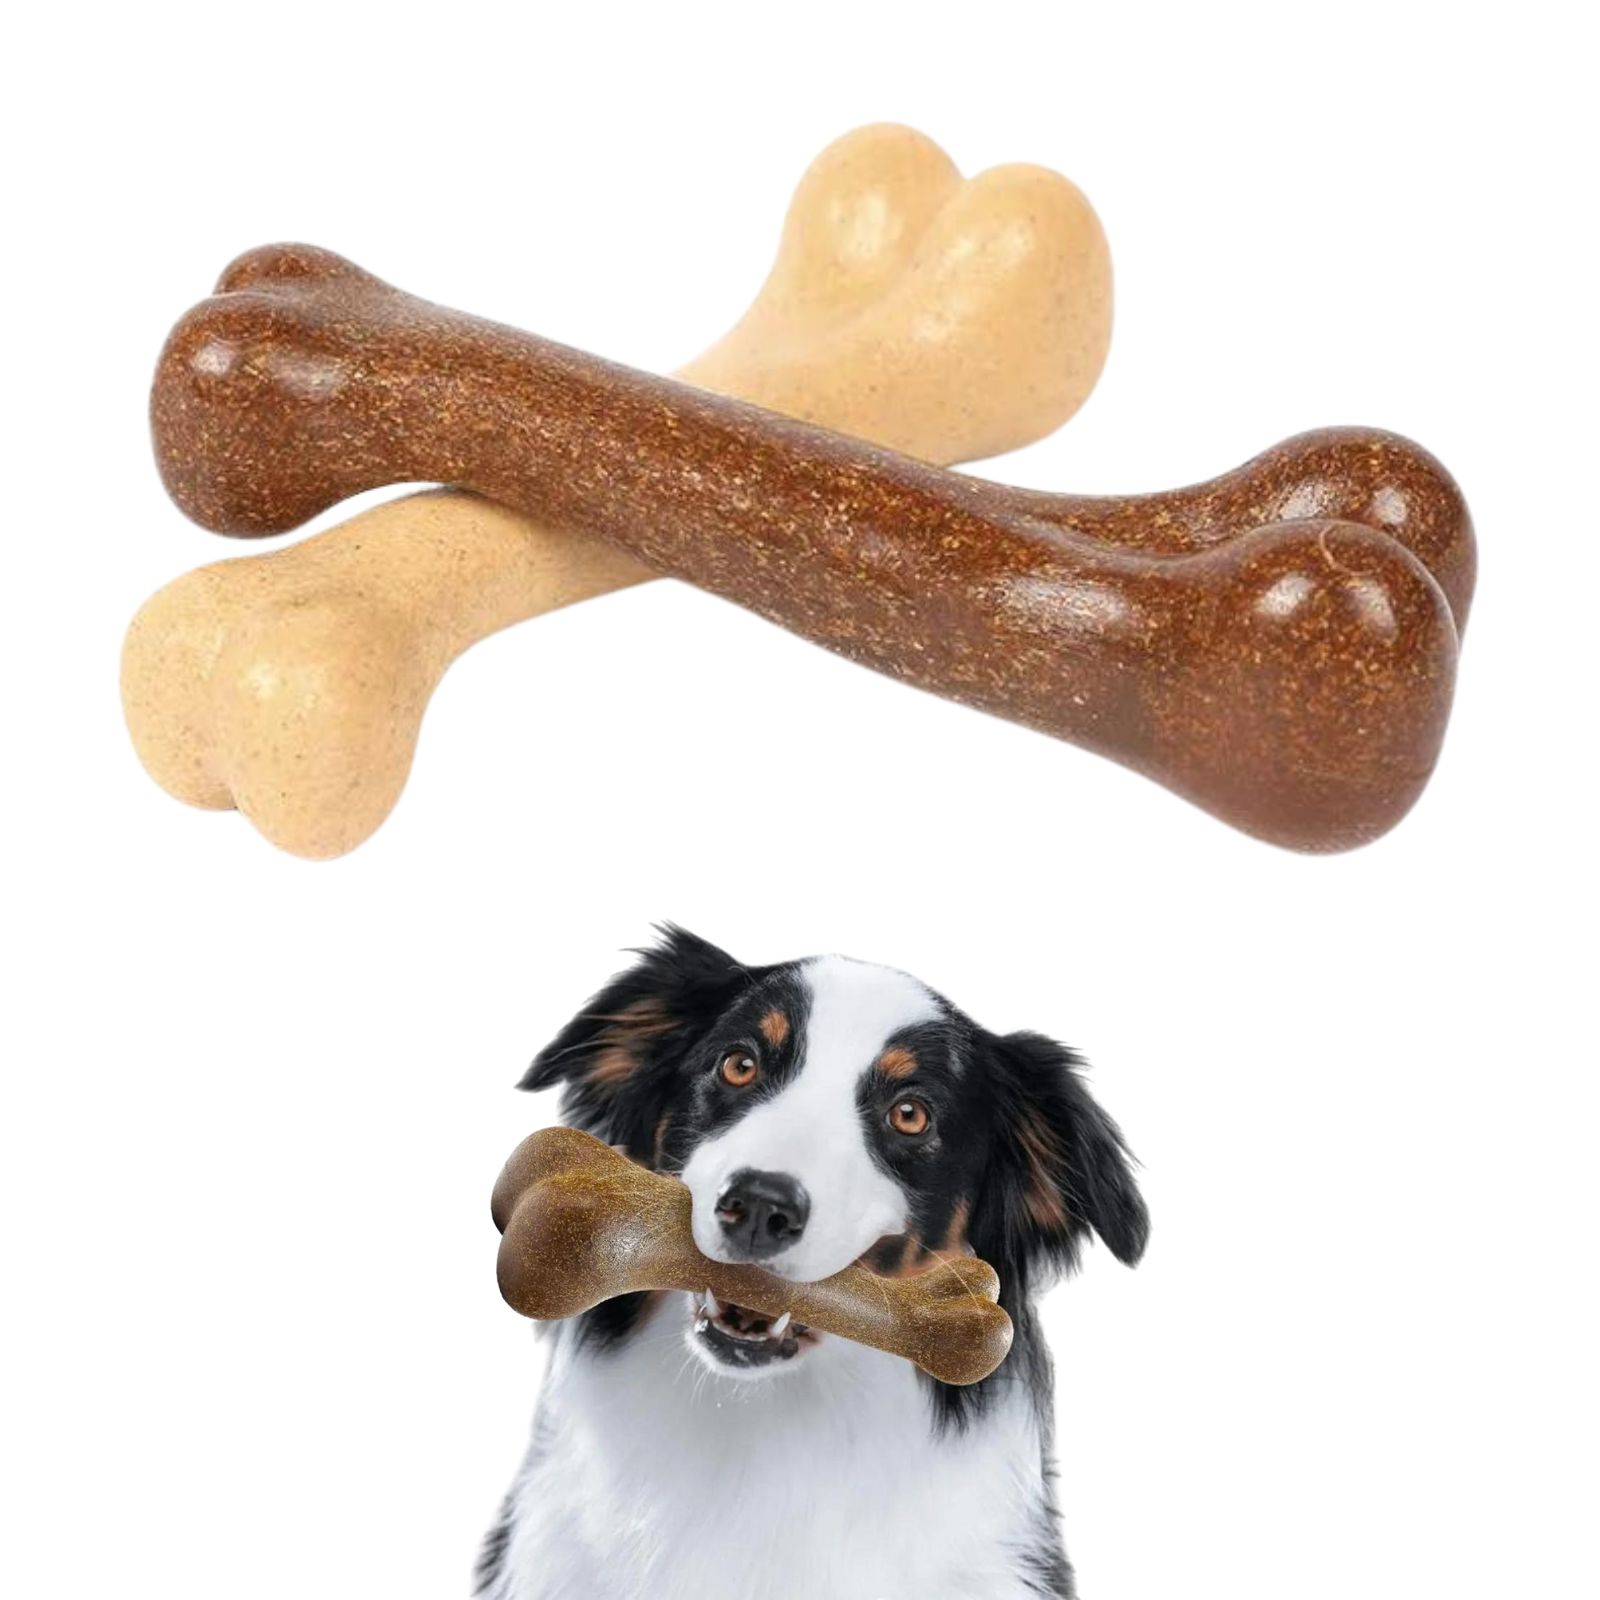 geneX 犬 おもちゃ 噛む 犬のおもちゃ 骨 噛むおもちゃ 2本入り 安全無毒 デンタルケア 牛肉の風味 12cm 歯みがき ストレス解消 運動不足 耐久性 ペット用品